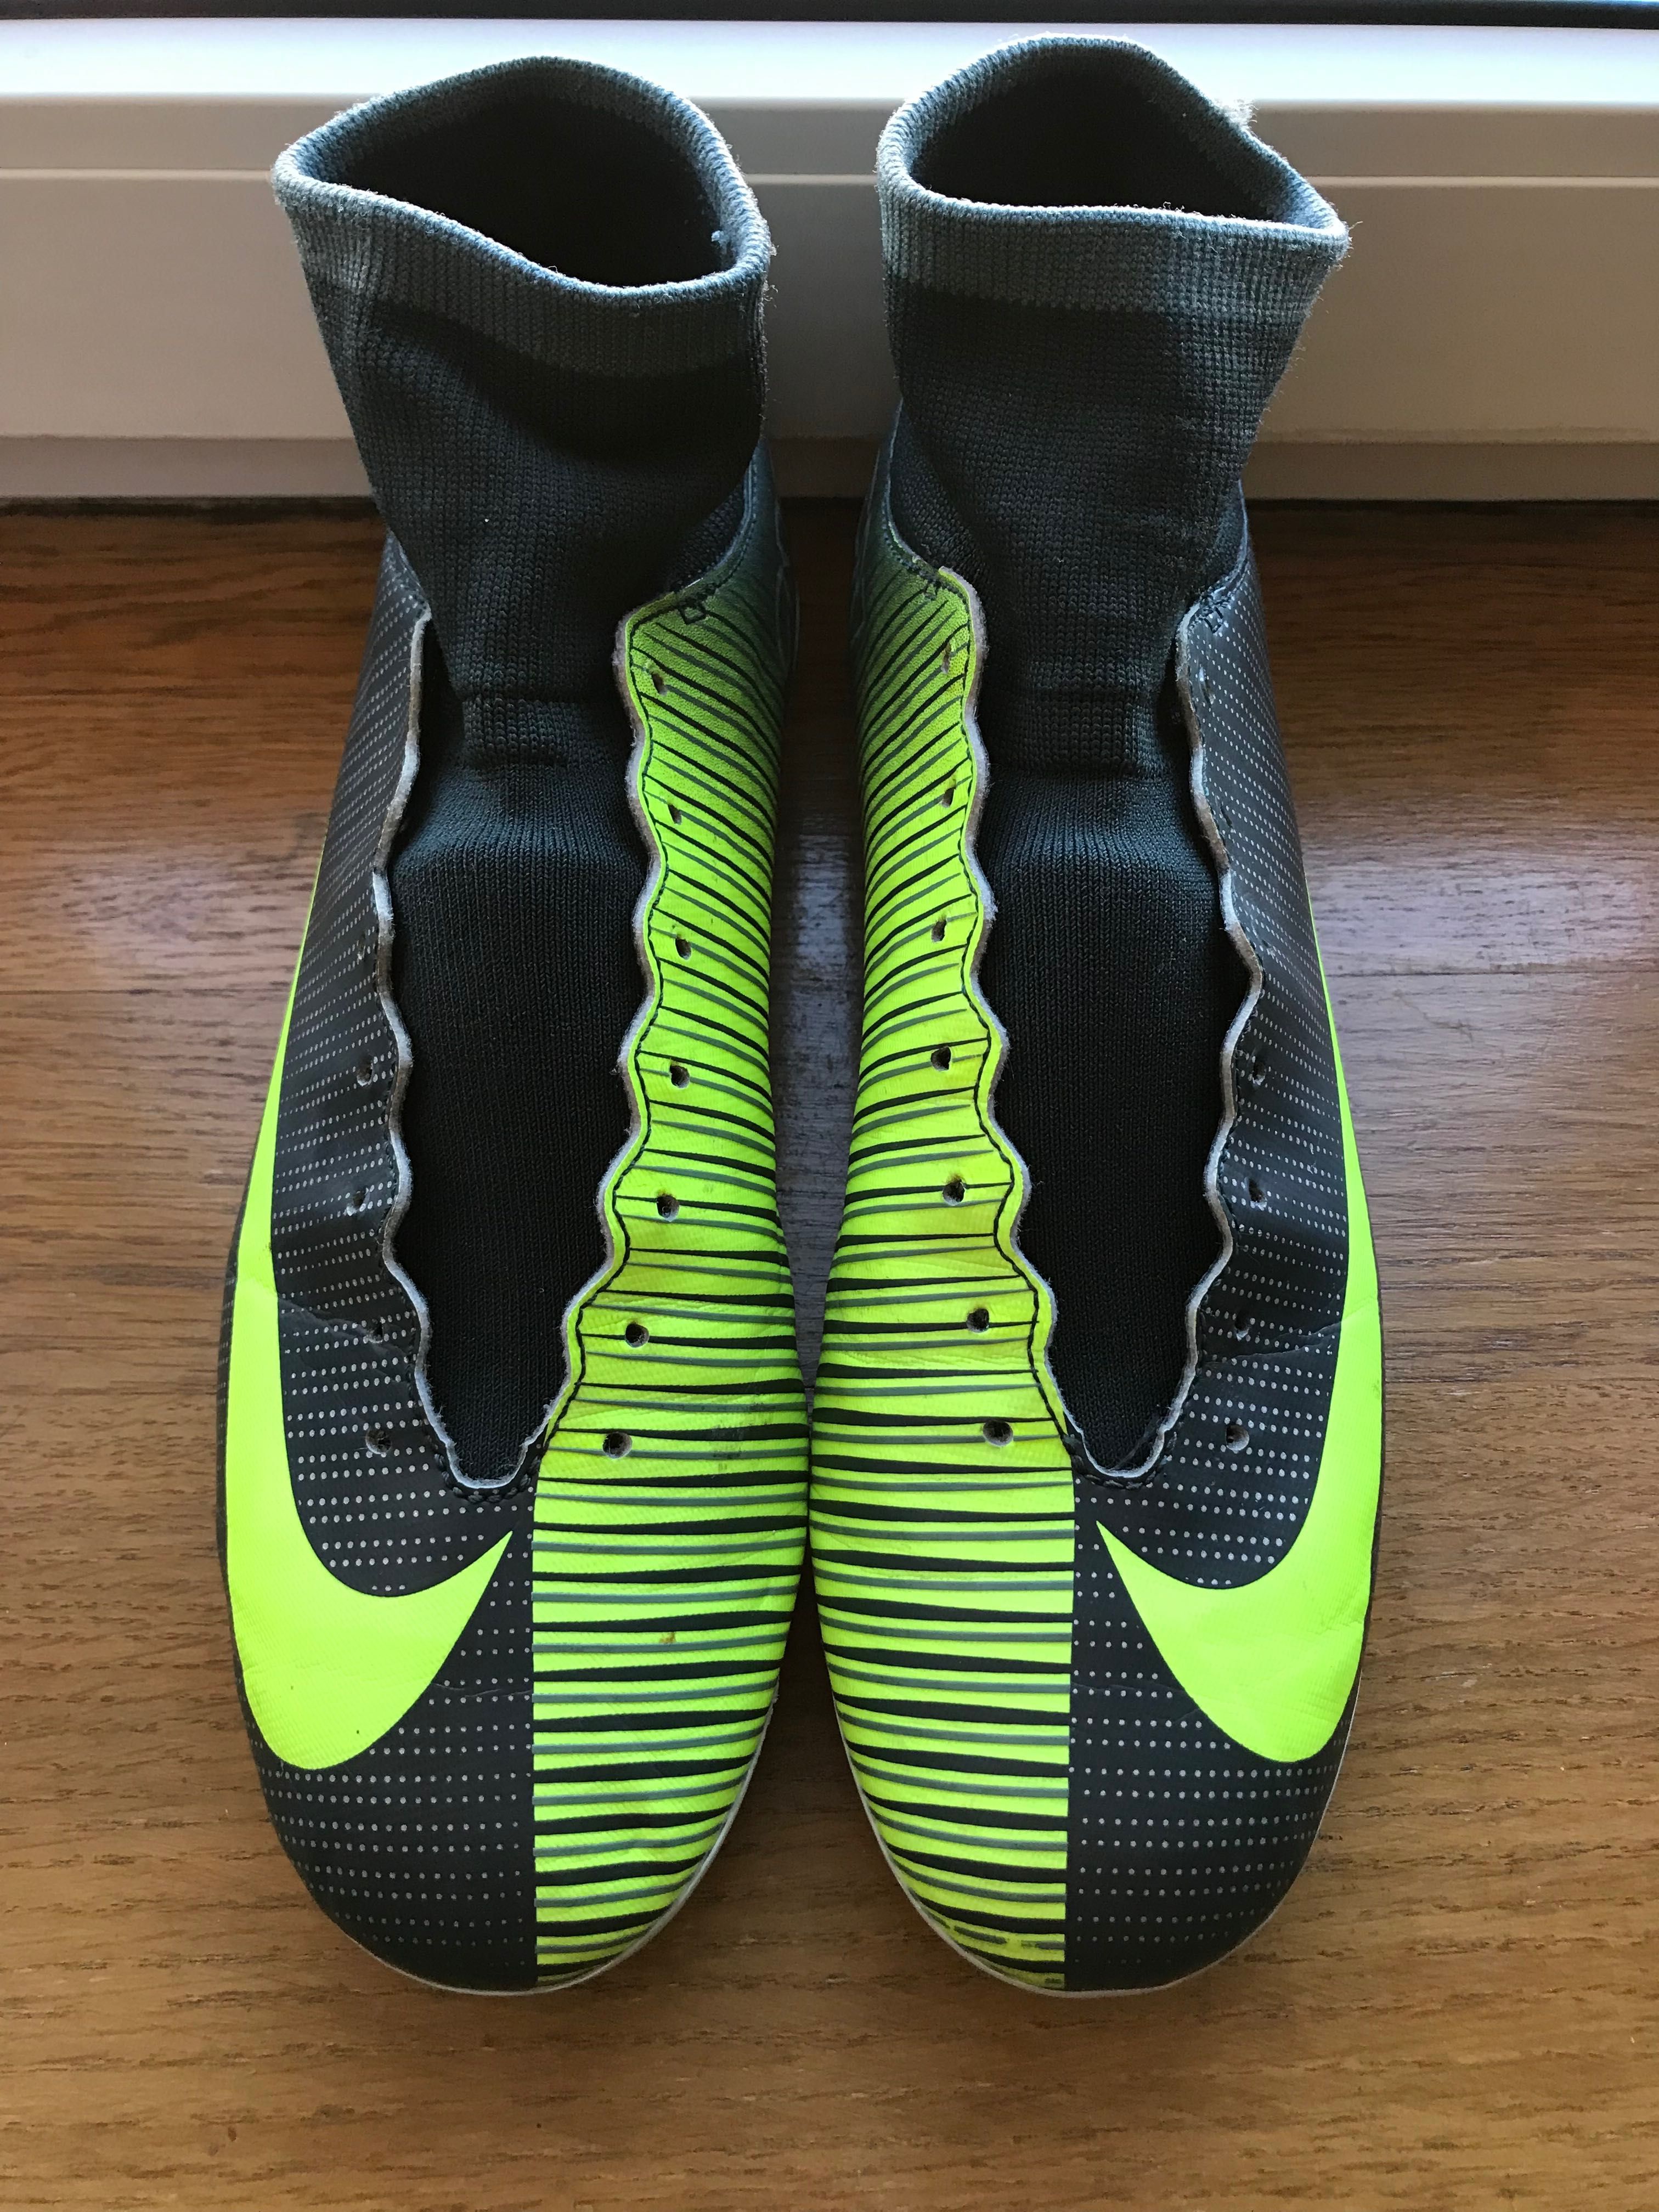 Nike mercurial CR7 футбольні бутси бутсы копочки 40.5 41 найк